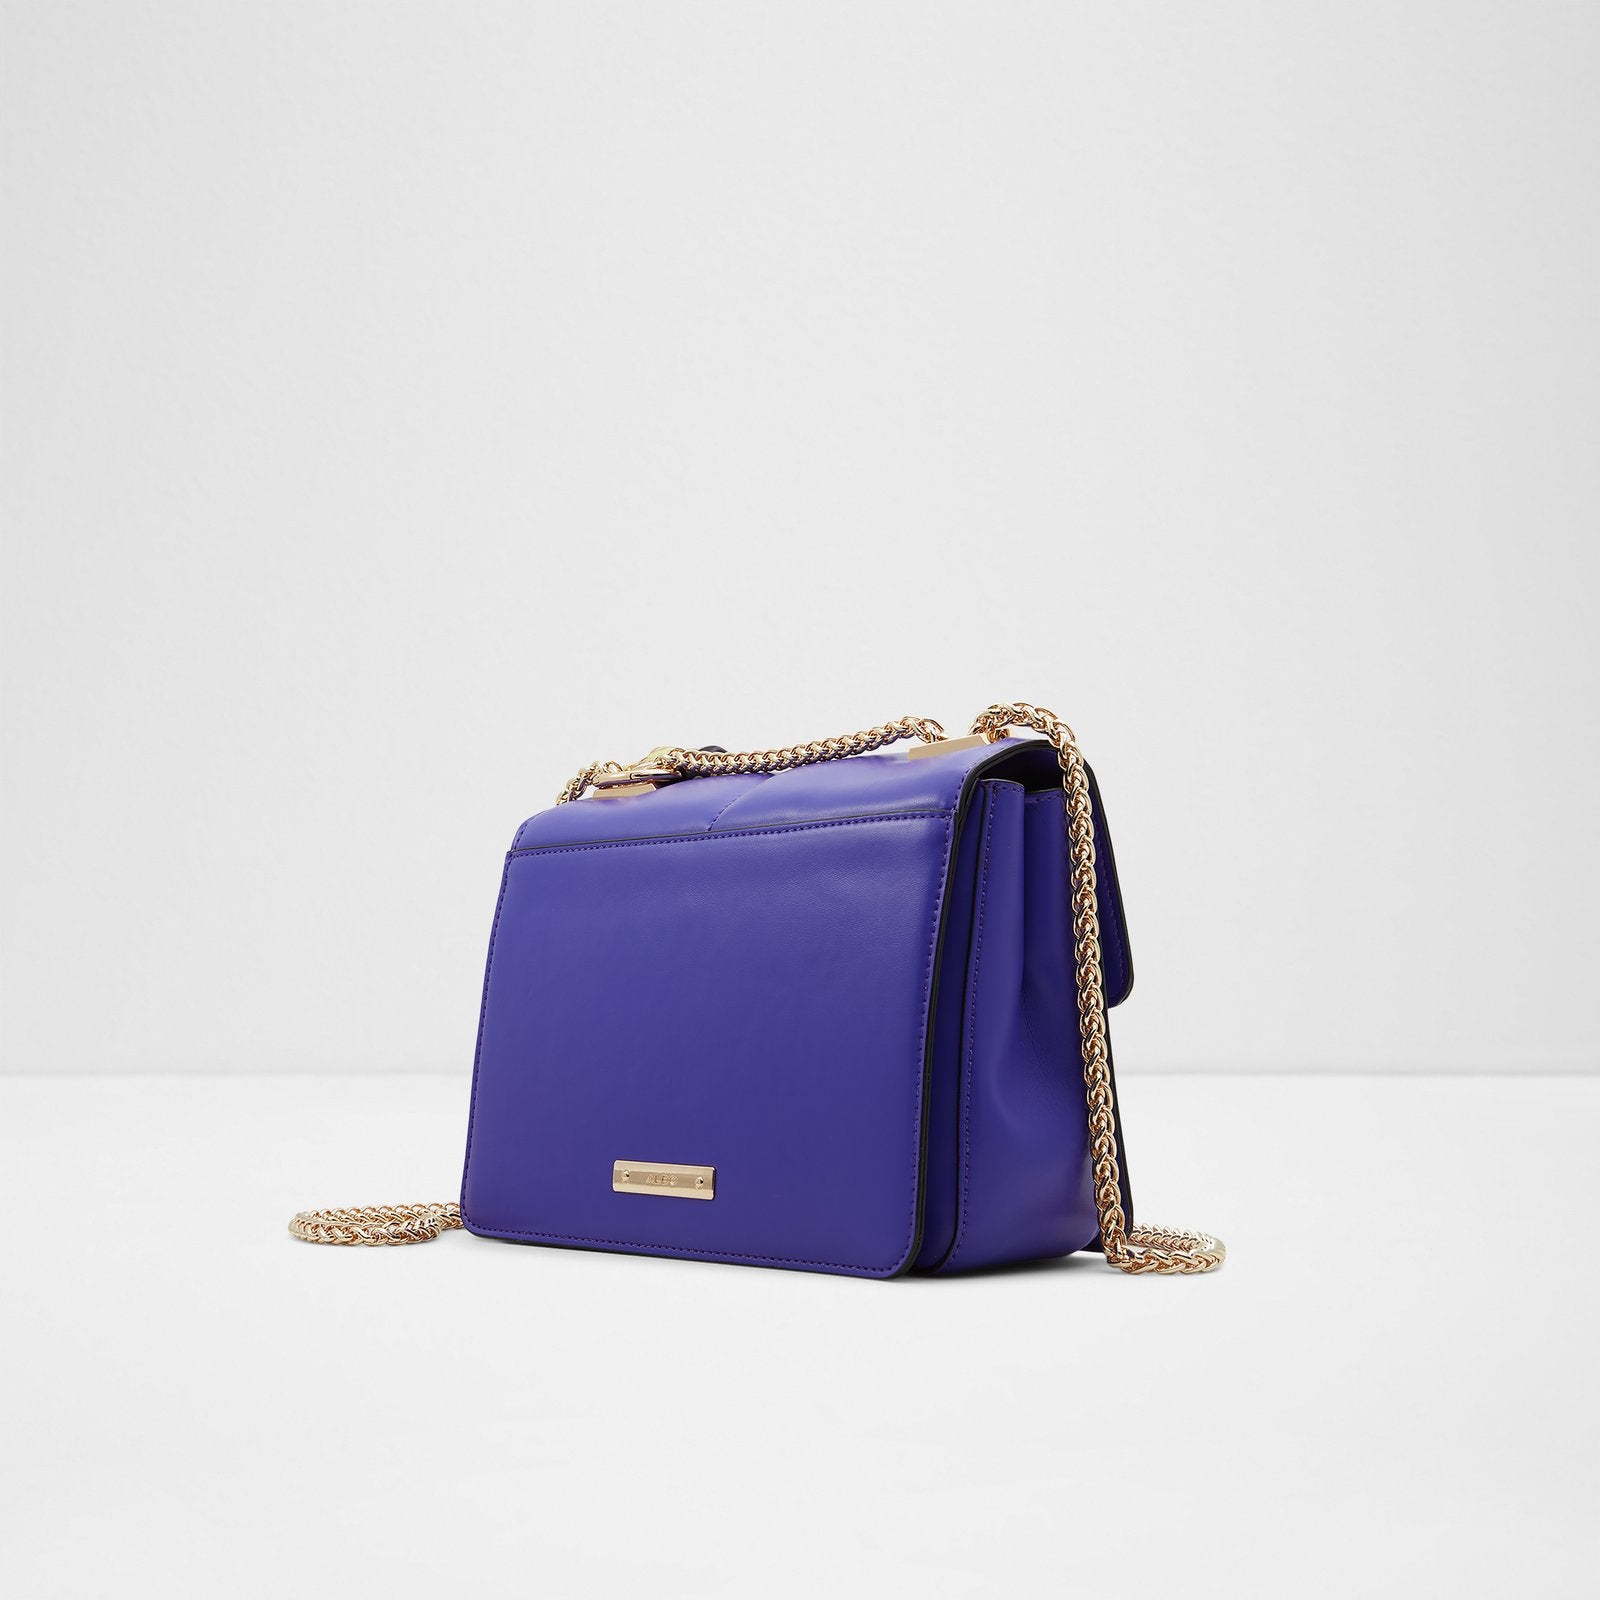 Albonnon Bag - Medium Purple - ALDO KSA